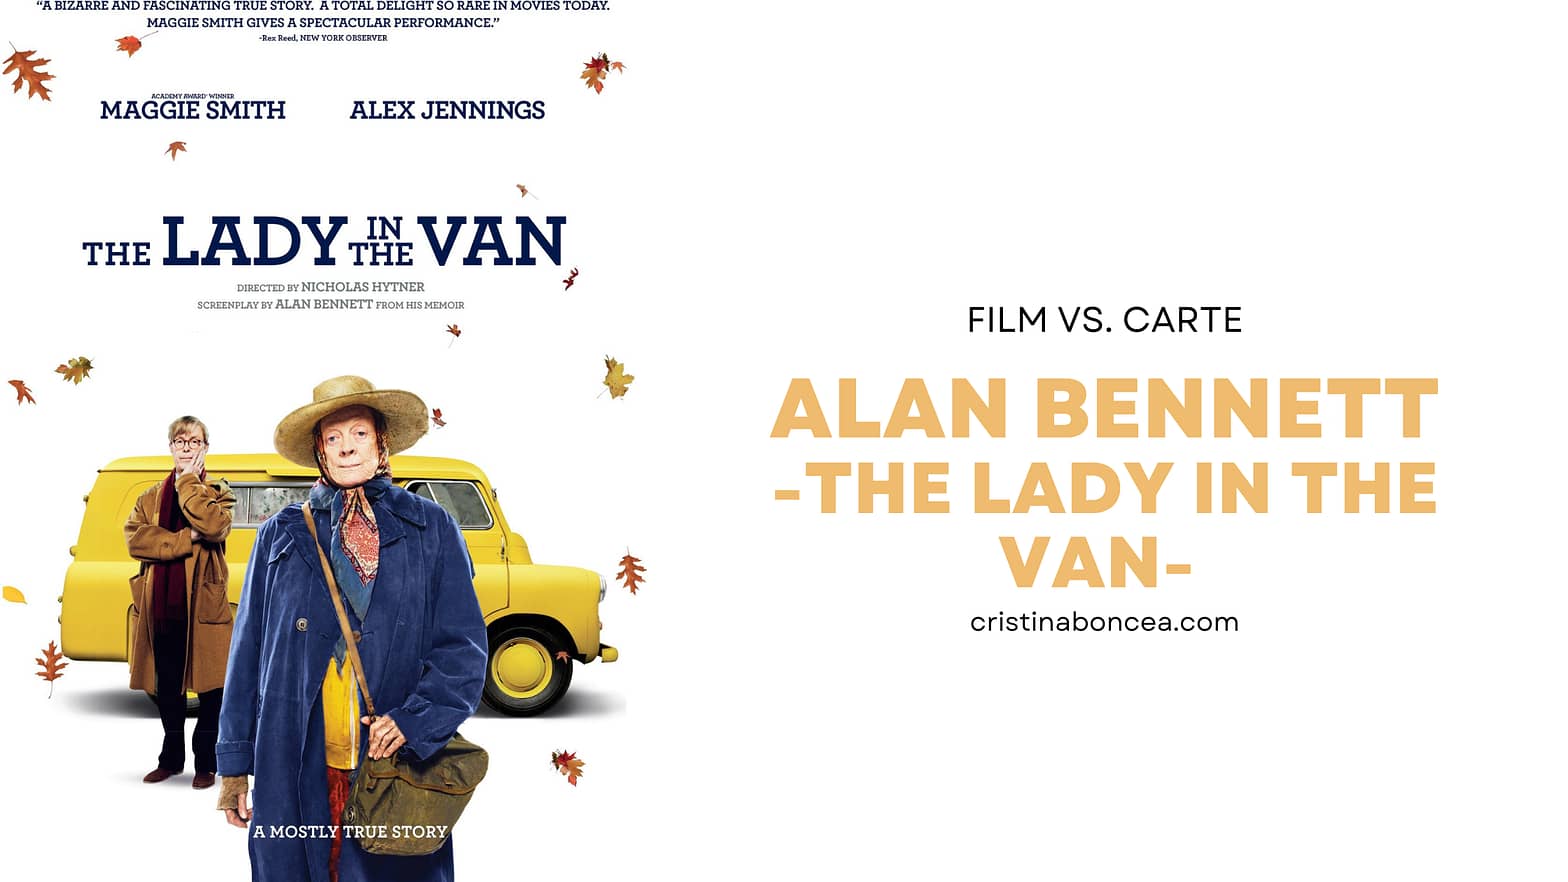 Film vs. Carte: The lady in the van